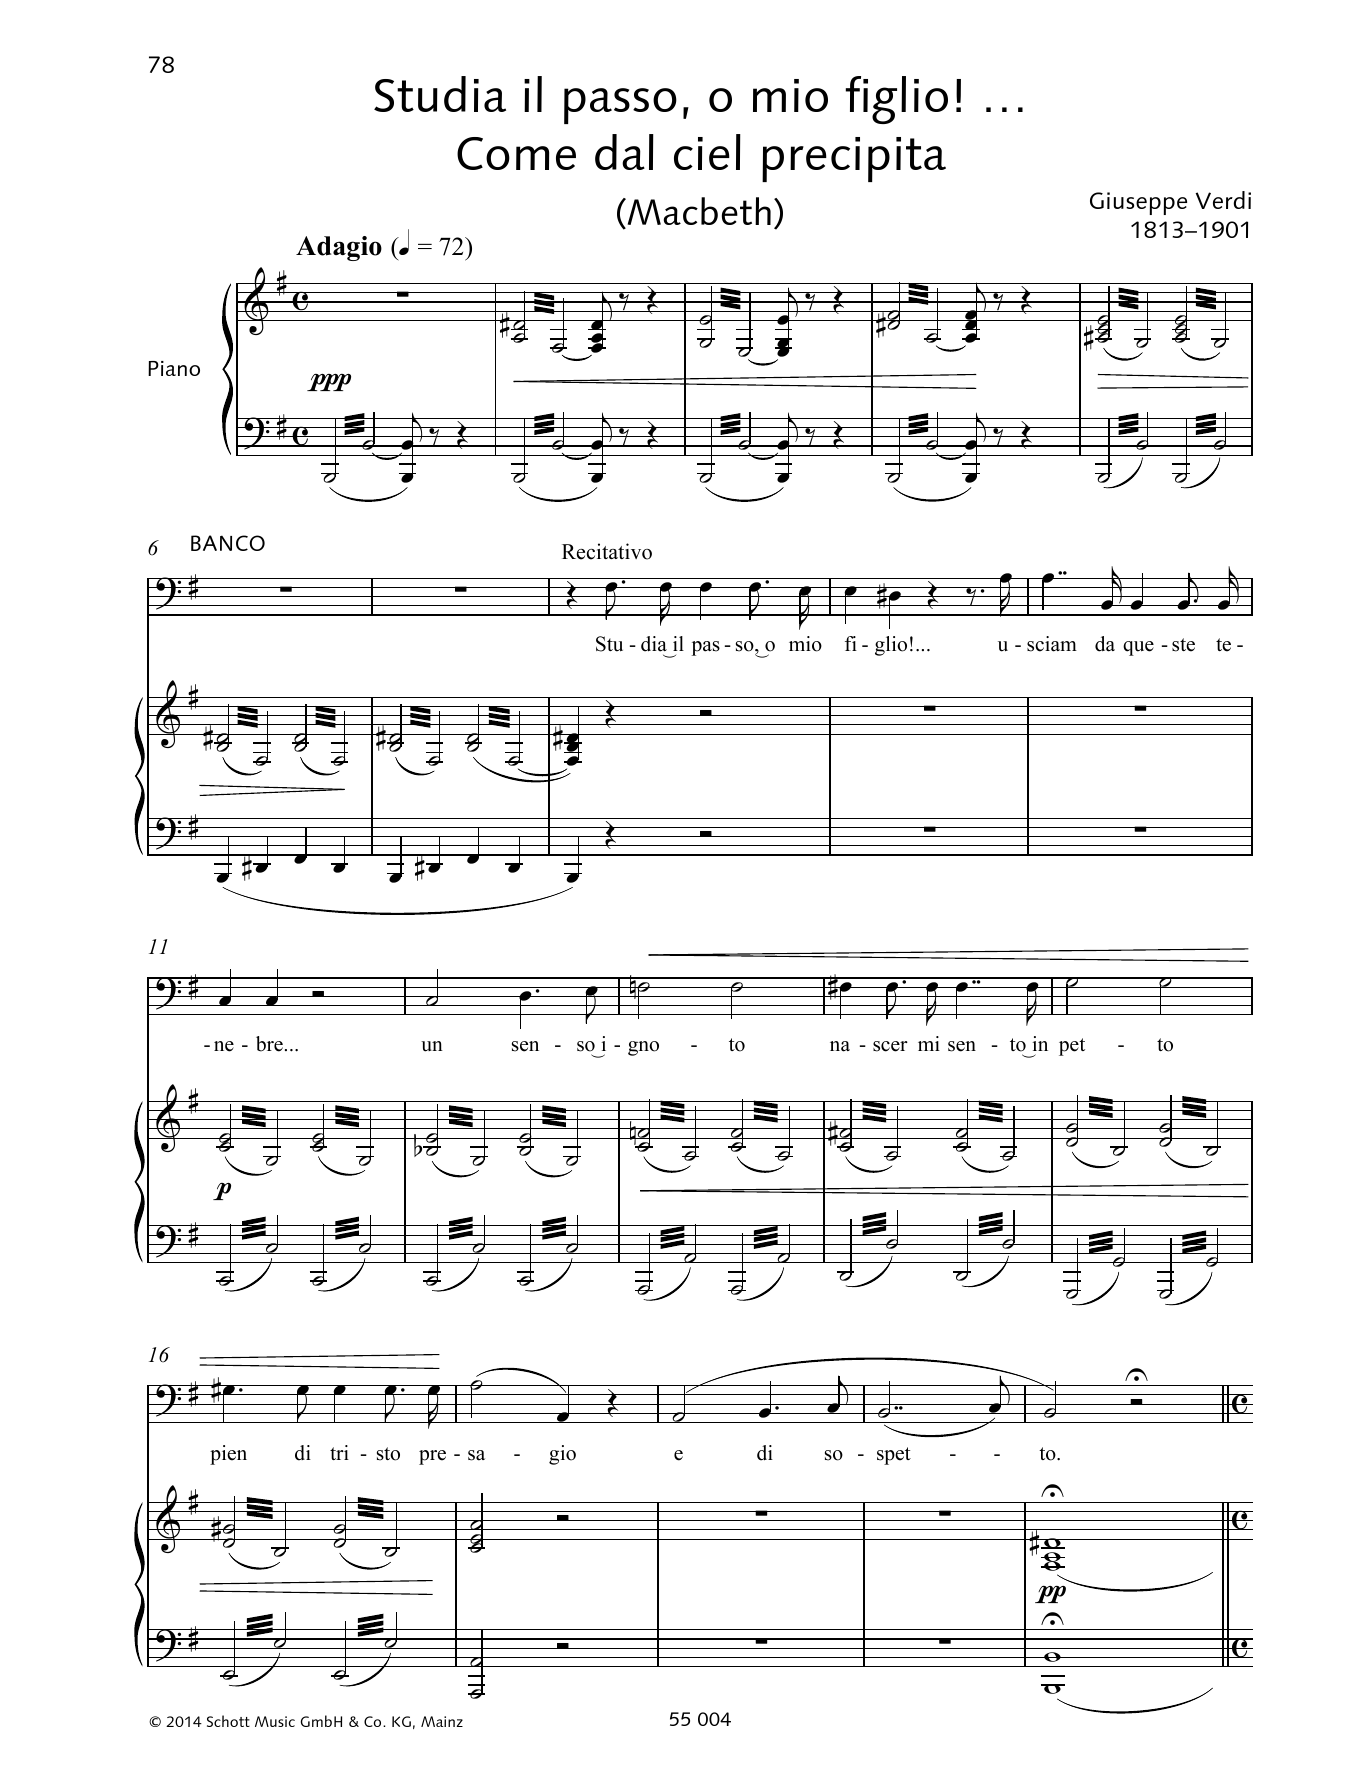 Download Giuseppe Verdi Studia il passo, o mio figlio!... Come Sheet Music